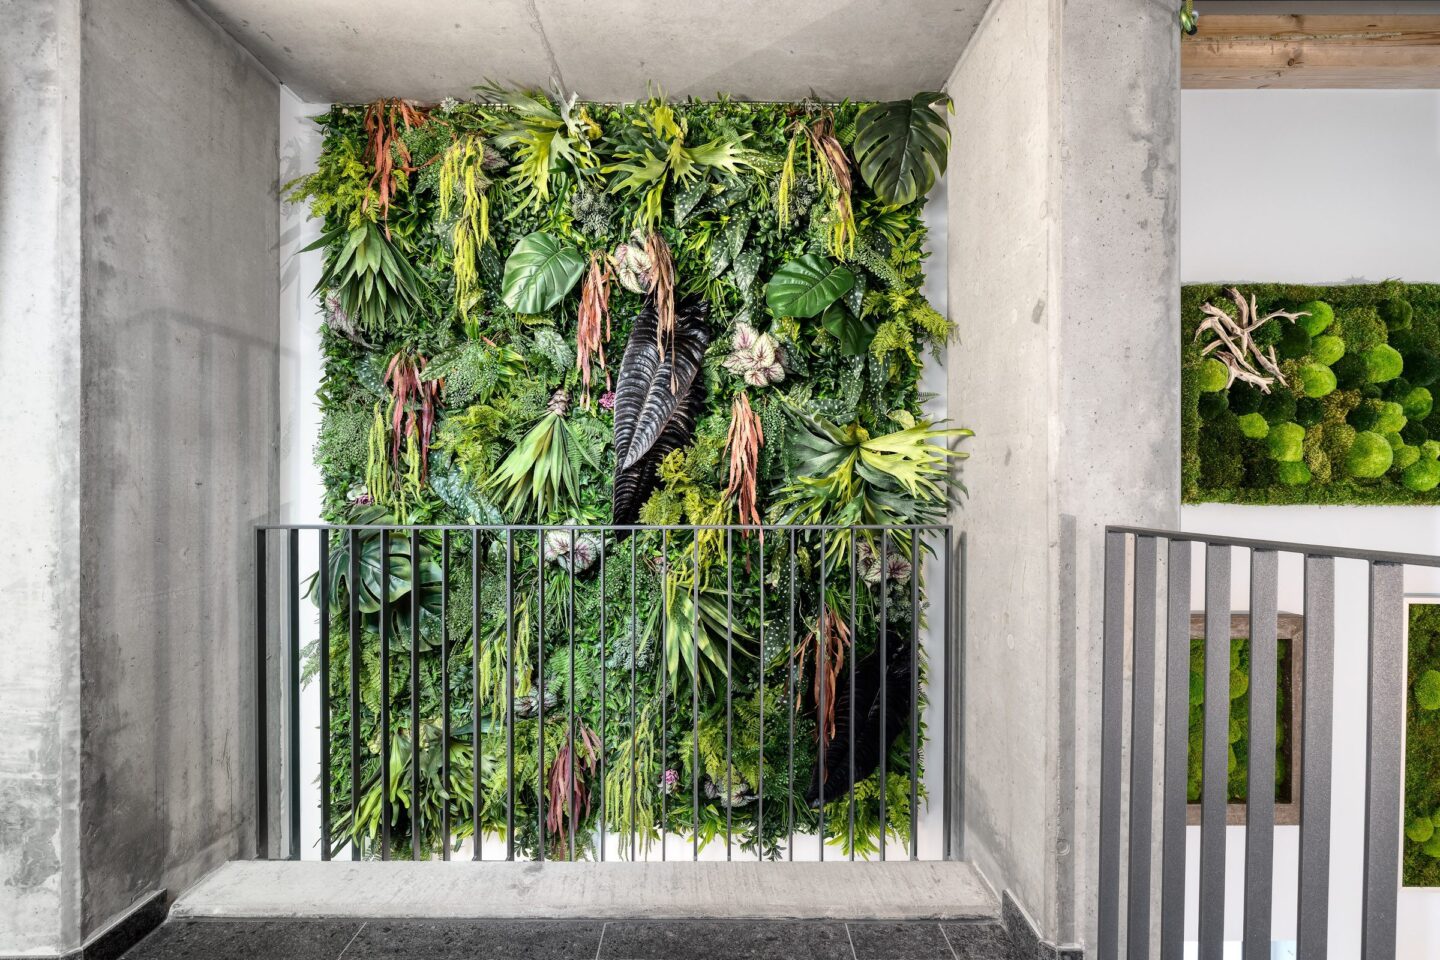 zeigt, wie moderne Büros zu lebendigen grünen Oasen werden können, in denen Menschen gerne arbeiten